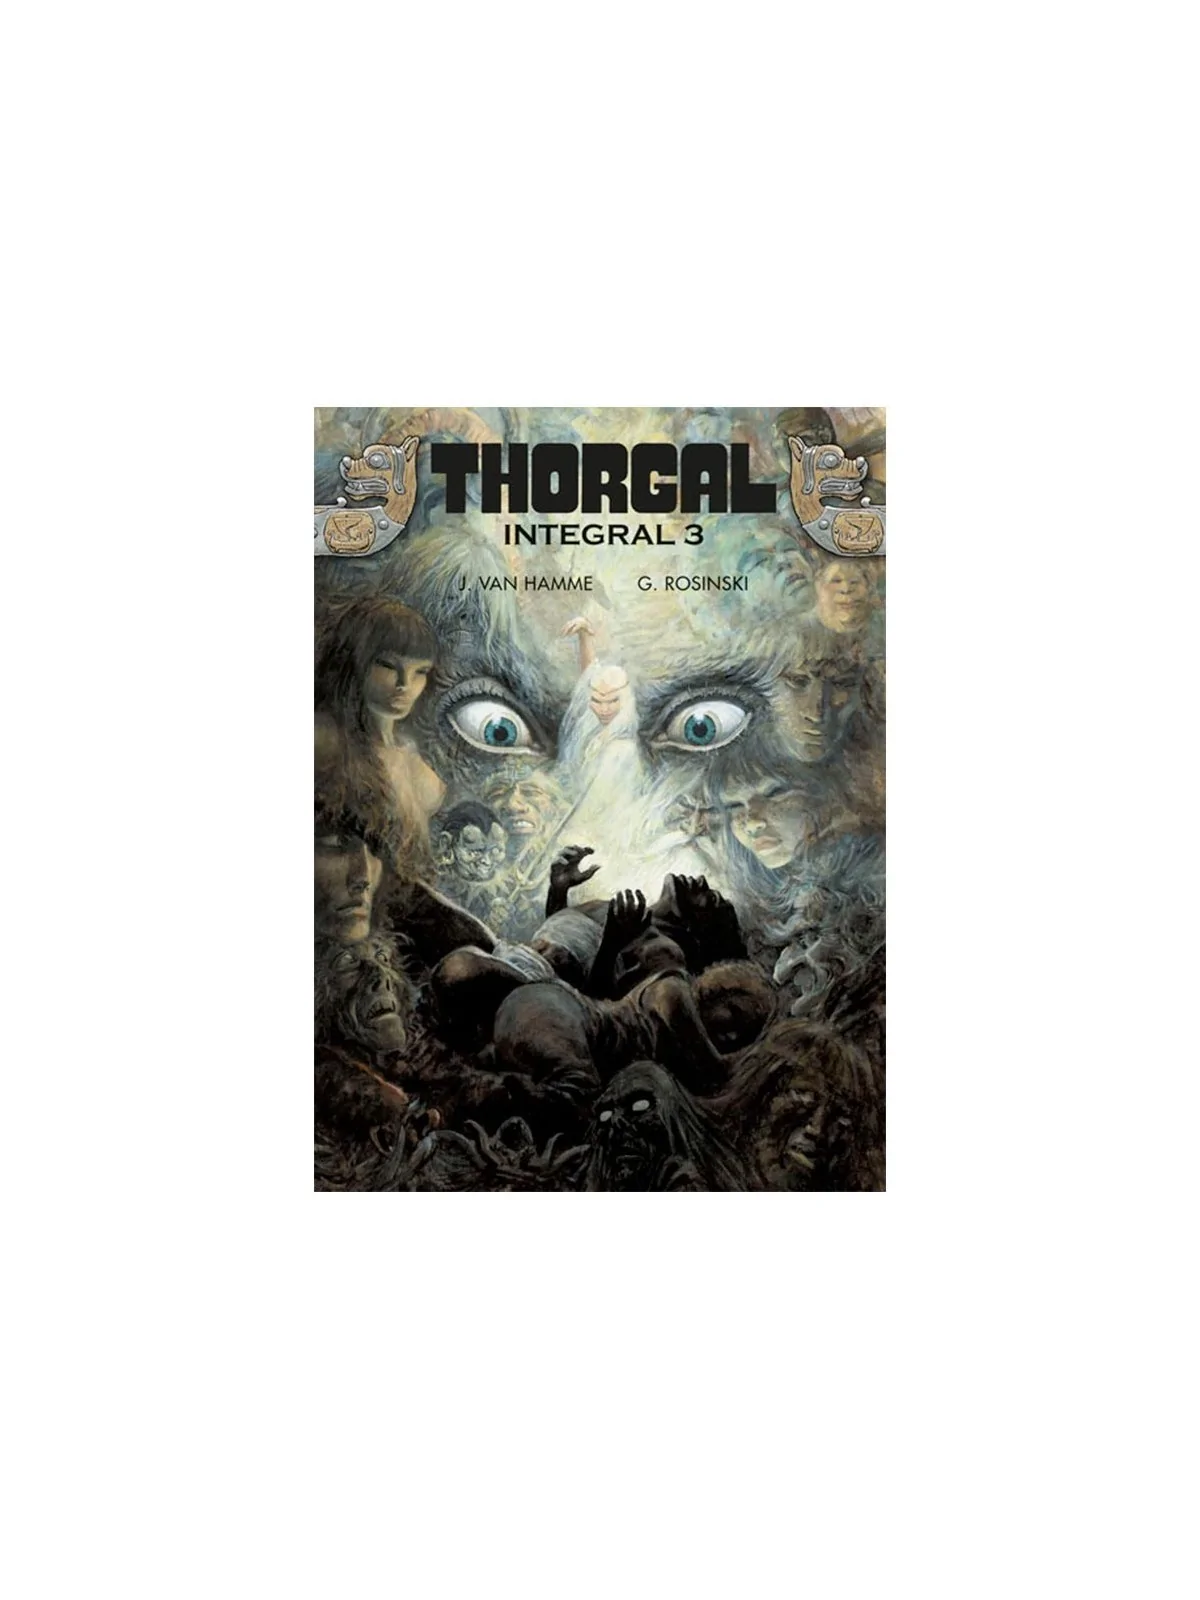 Comprar Thorgal Integral 03 barato al mejor precio 33,25 € de Norma Ed